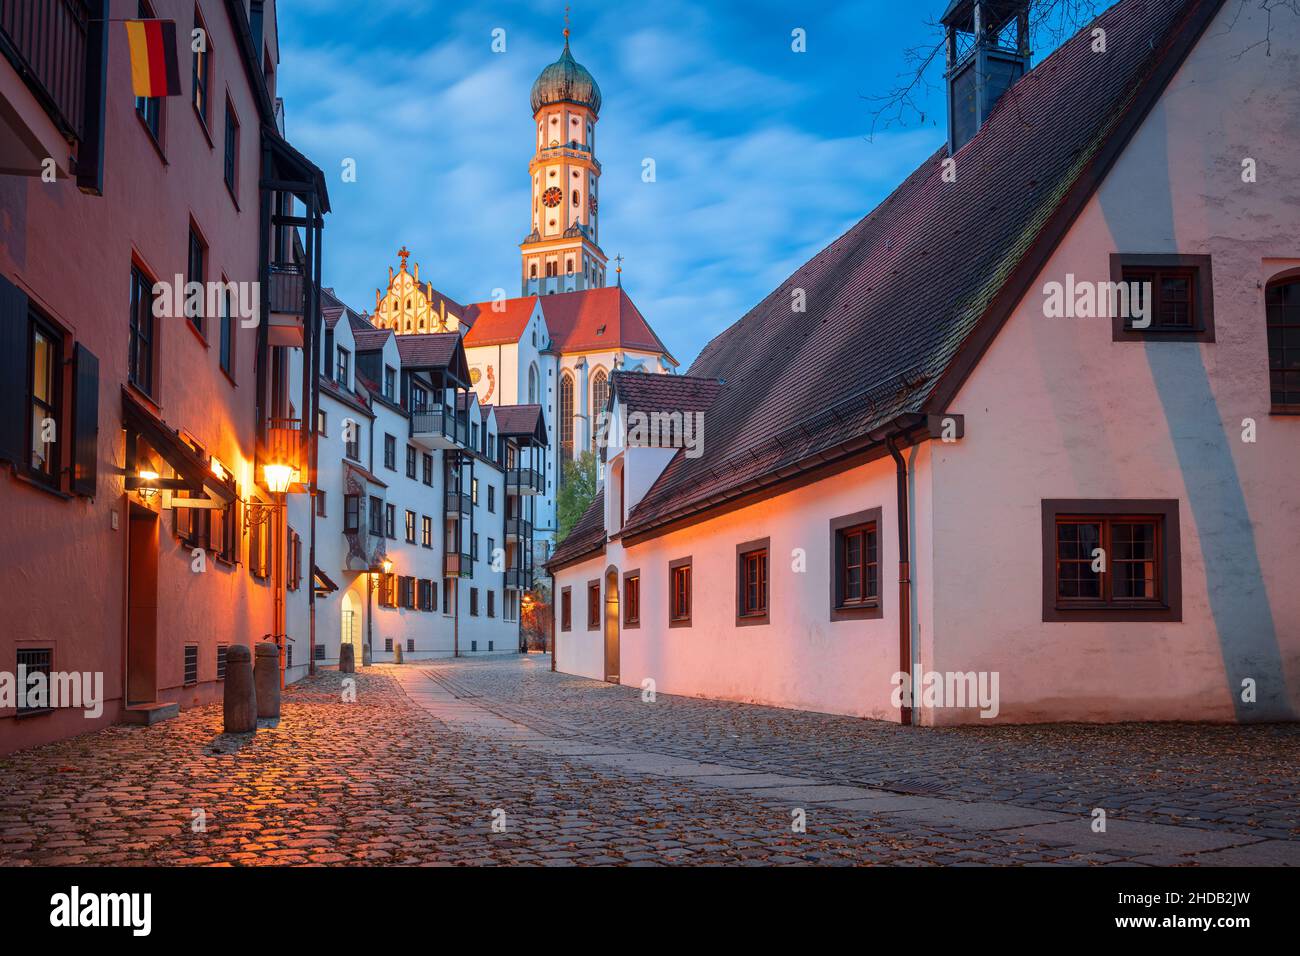 Augsbourg, Allemagne.Image de paysage urbain de la vieille ville de la rue d'Augsbourg, en Allemagne avec la basilique de Saint-Ulrich et d'Afrala au coucher du soleil d'automne. Banque D'Images